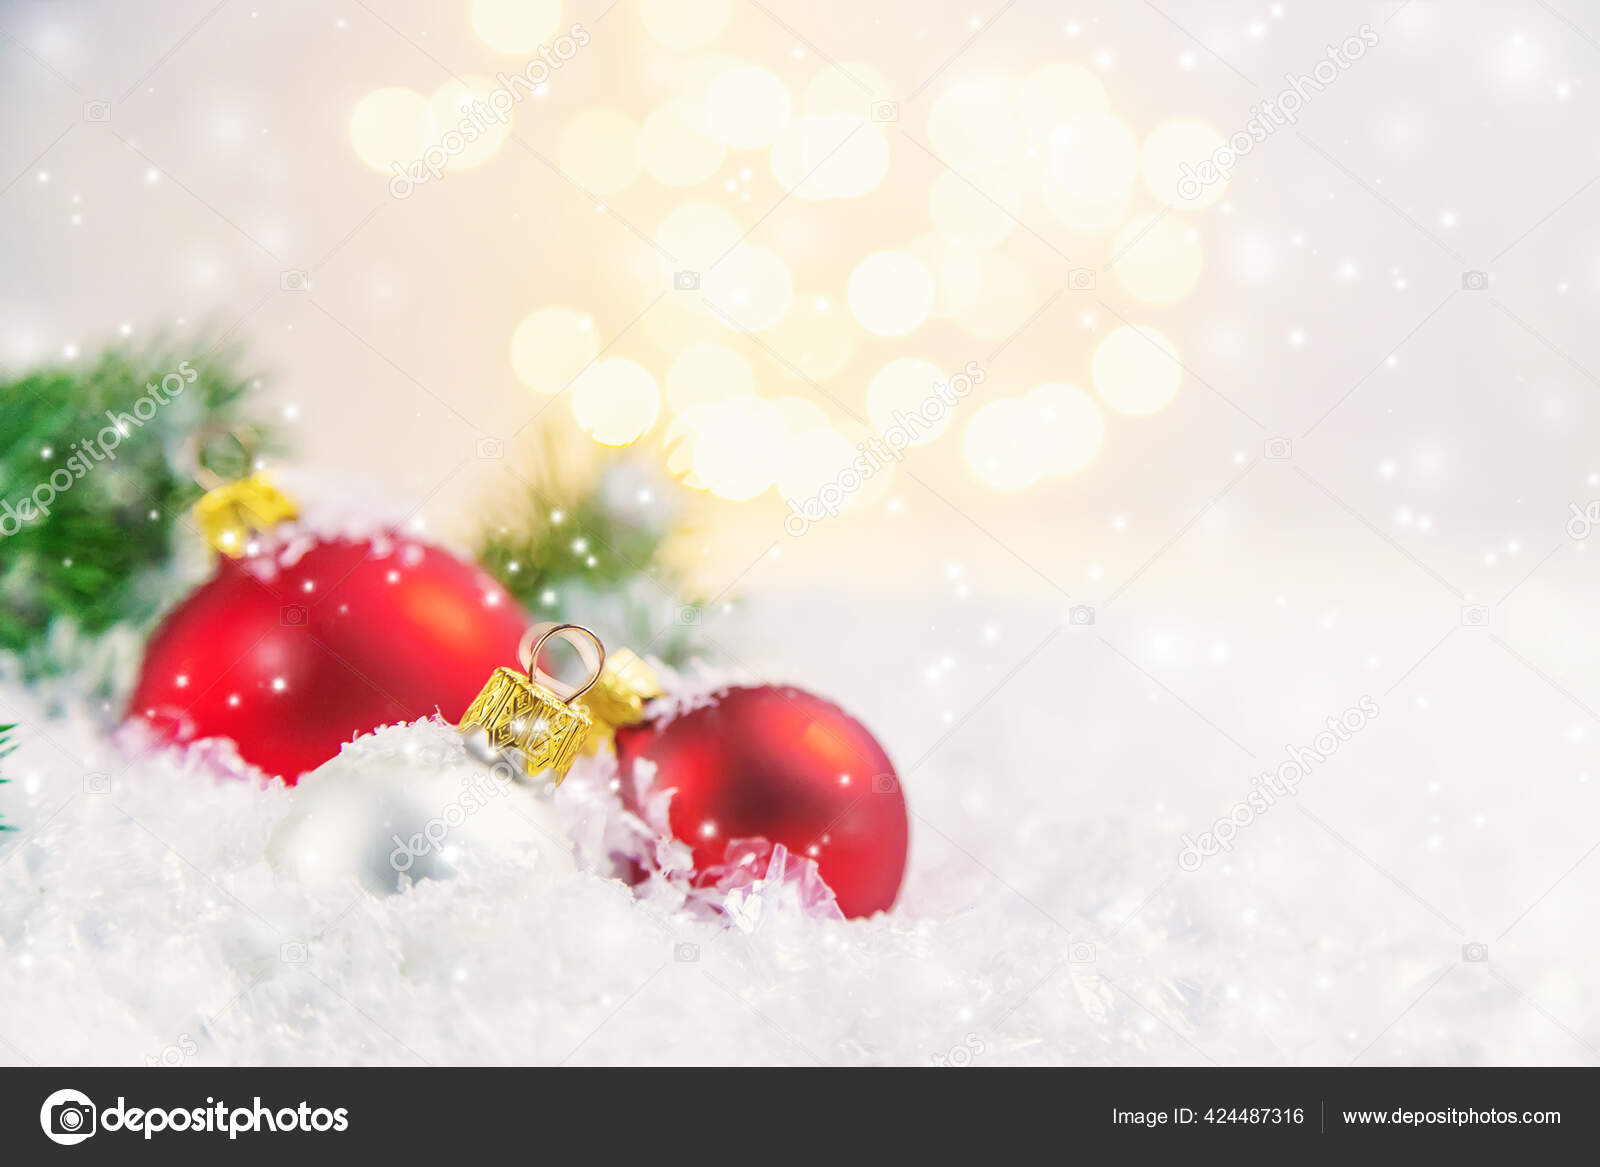 Weihnachten Hintergrund Und Schone Dekoration Neujahr Selektiver Fokus Urlaub Stockfotografie Lizenzfreie Fotos C Yana Komisarenko Yandex Ru Depositphotos